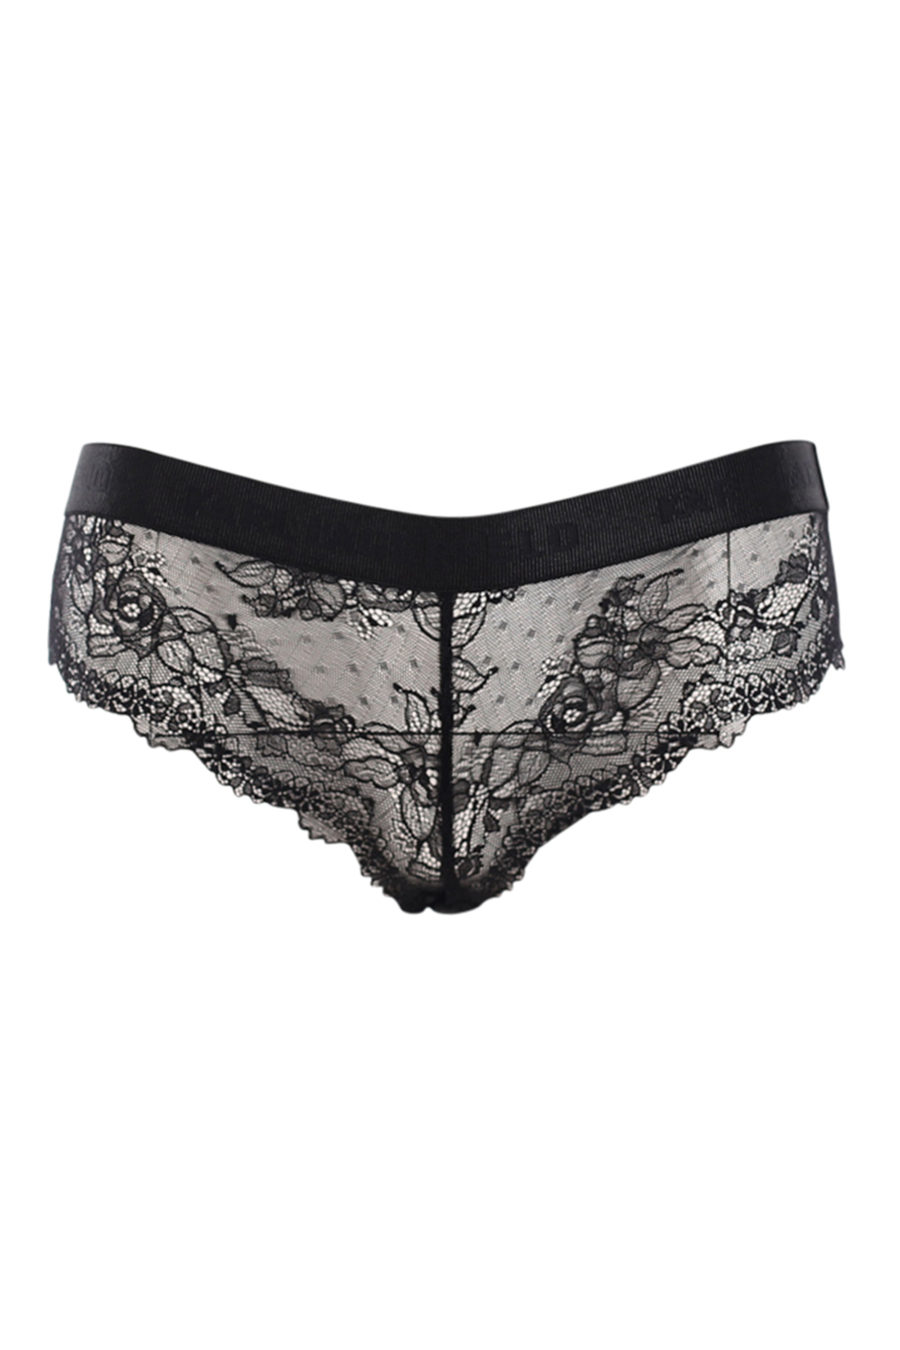 Black panties in lace - IMG 0605